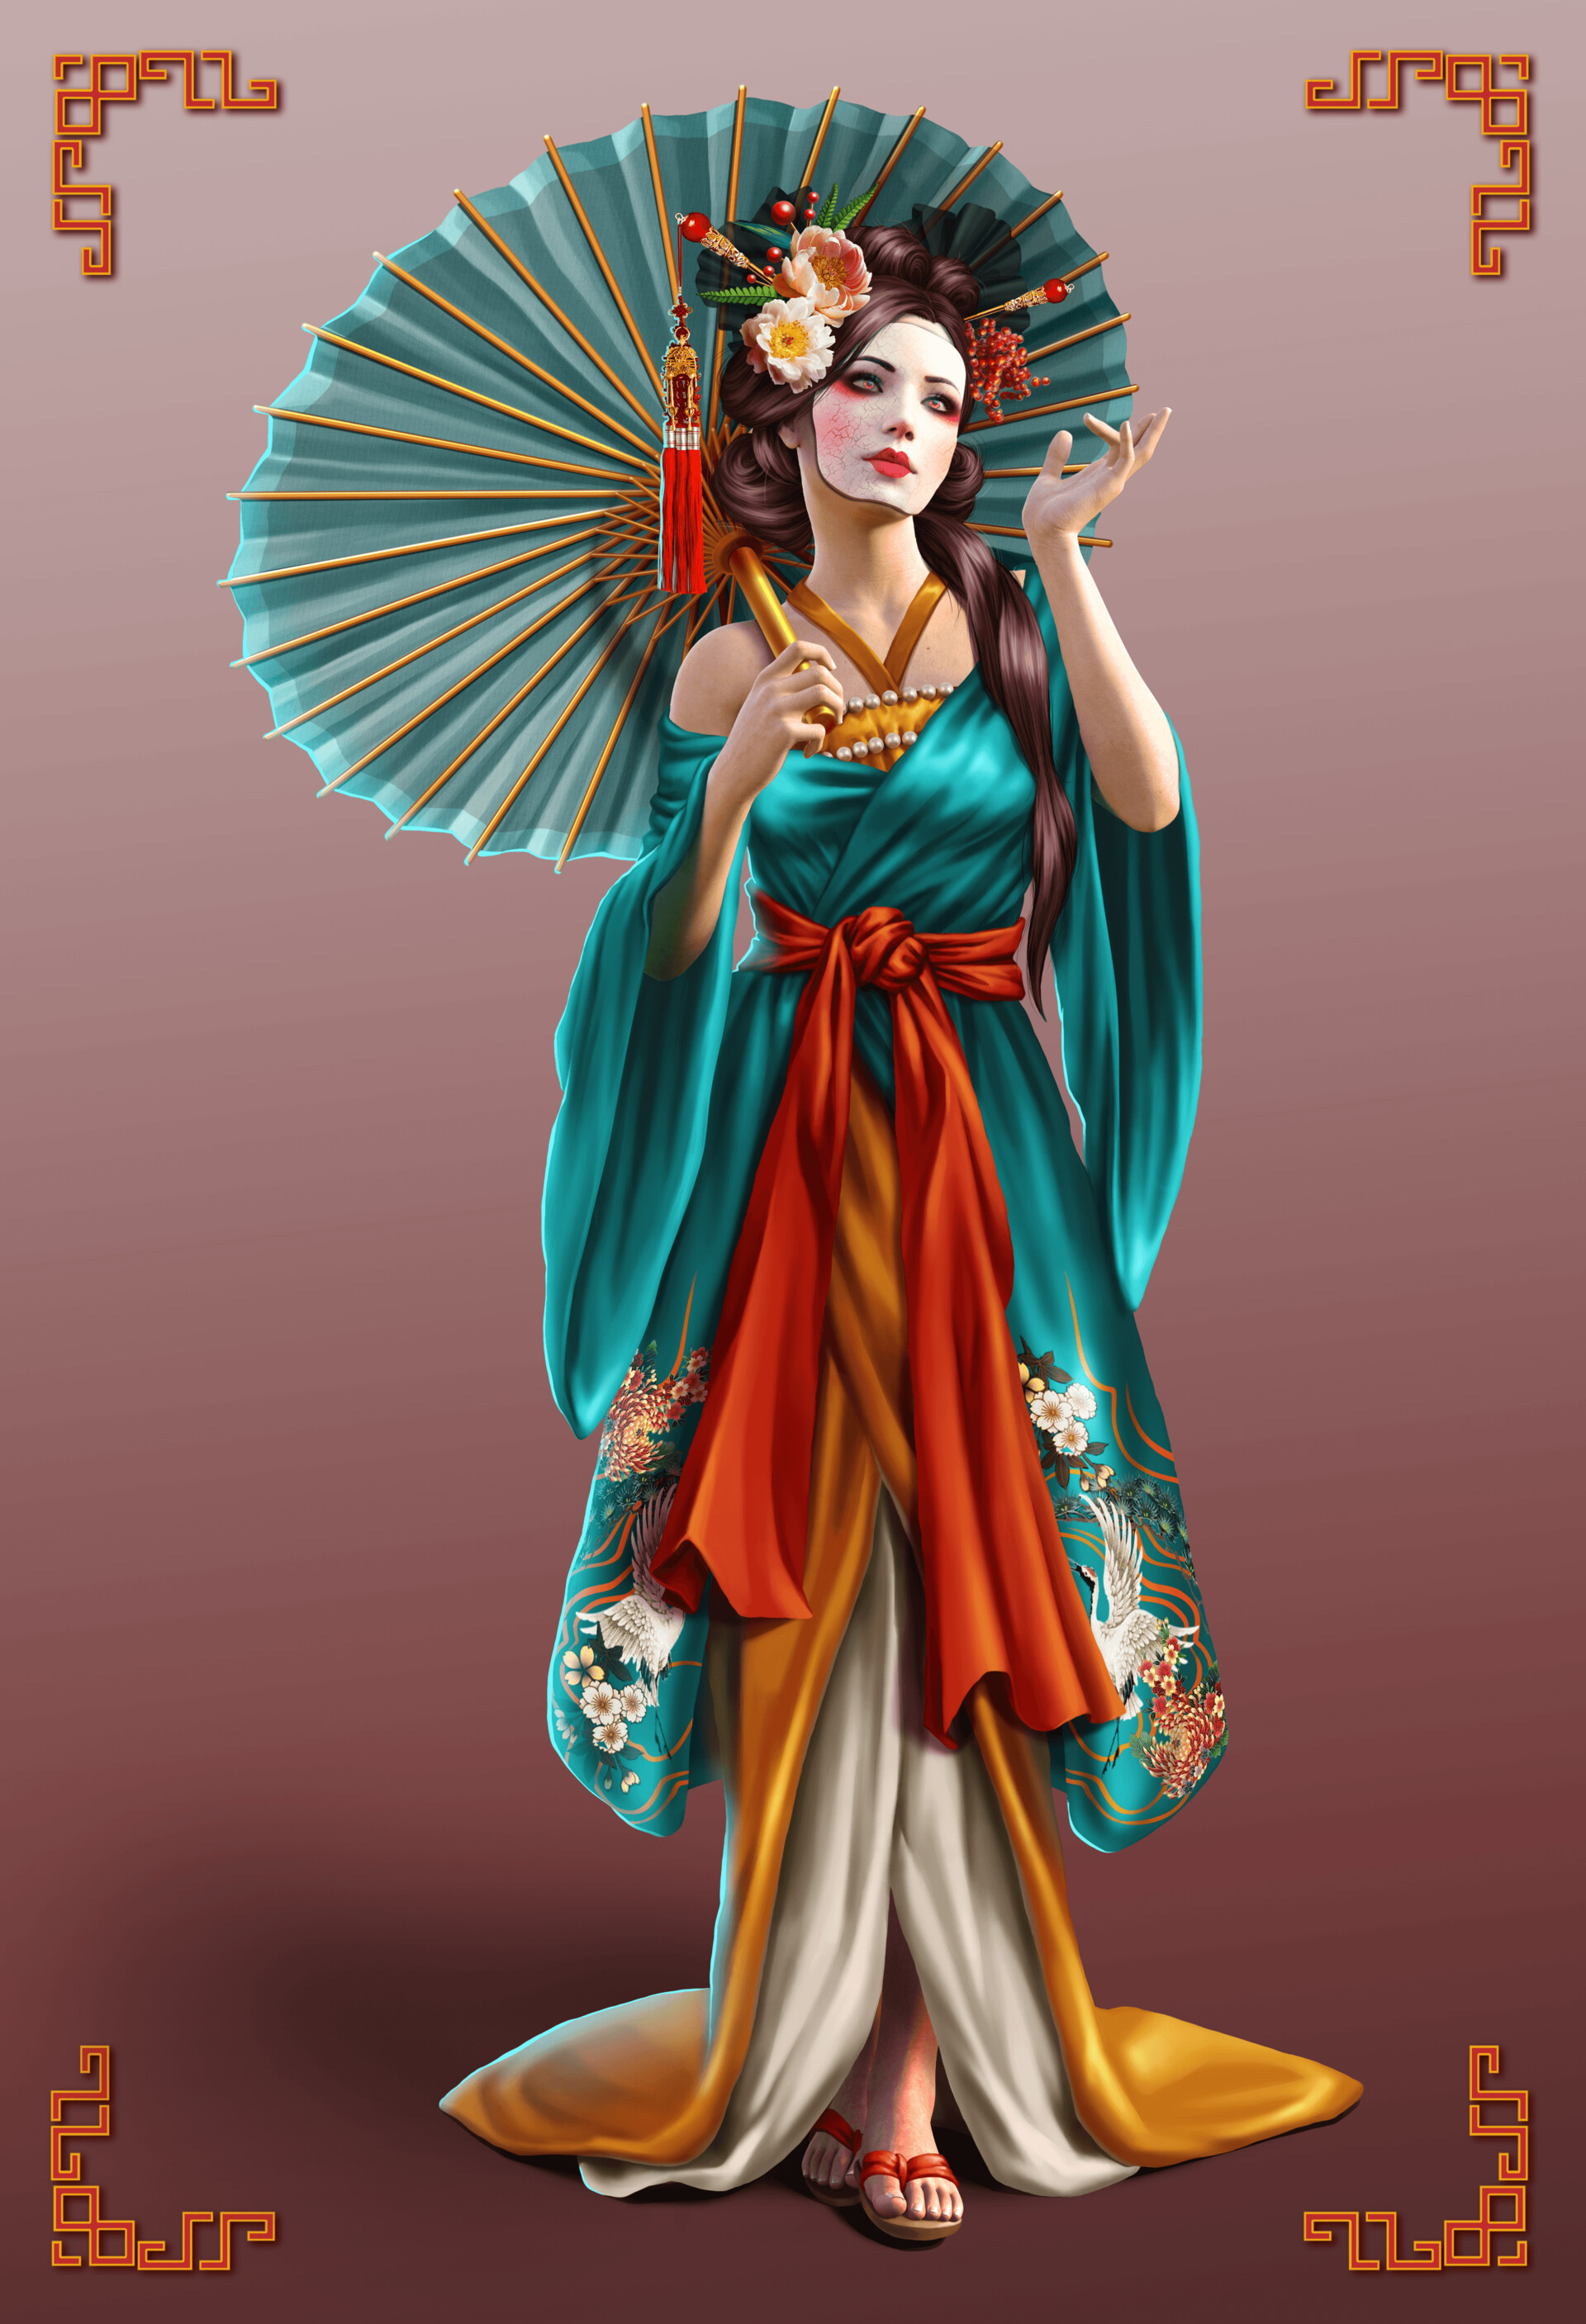 Tableau Japonais Geisha Style #geisha #illustration #illustration